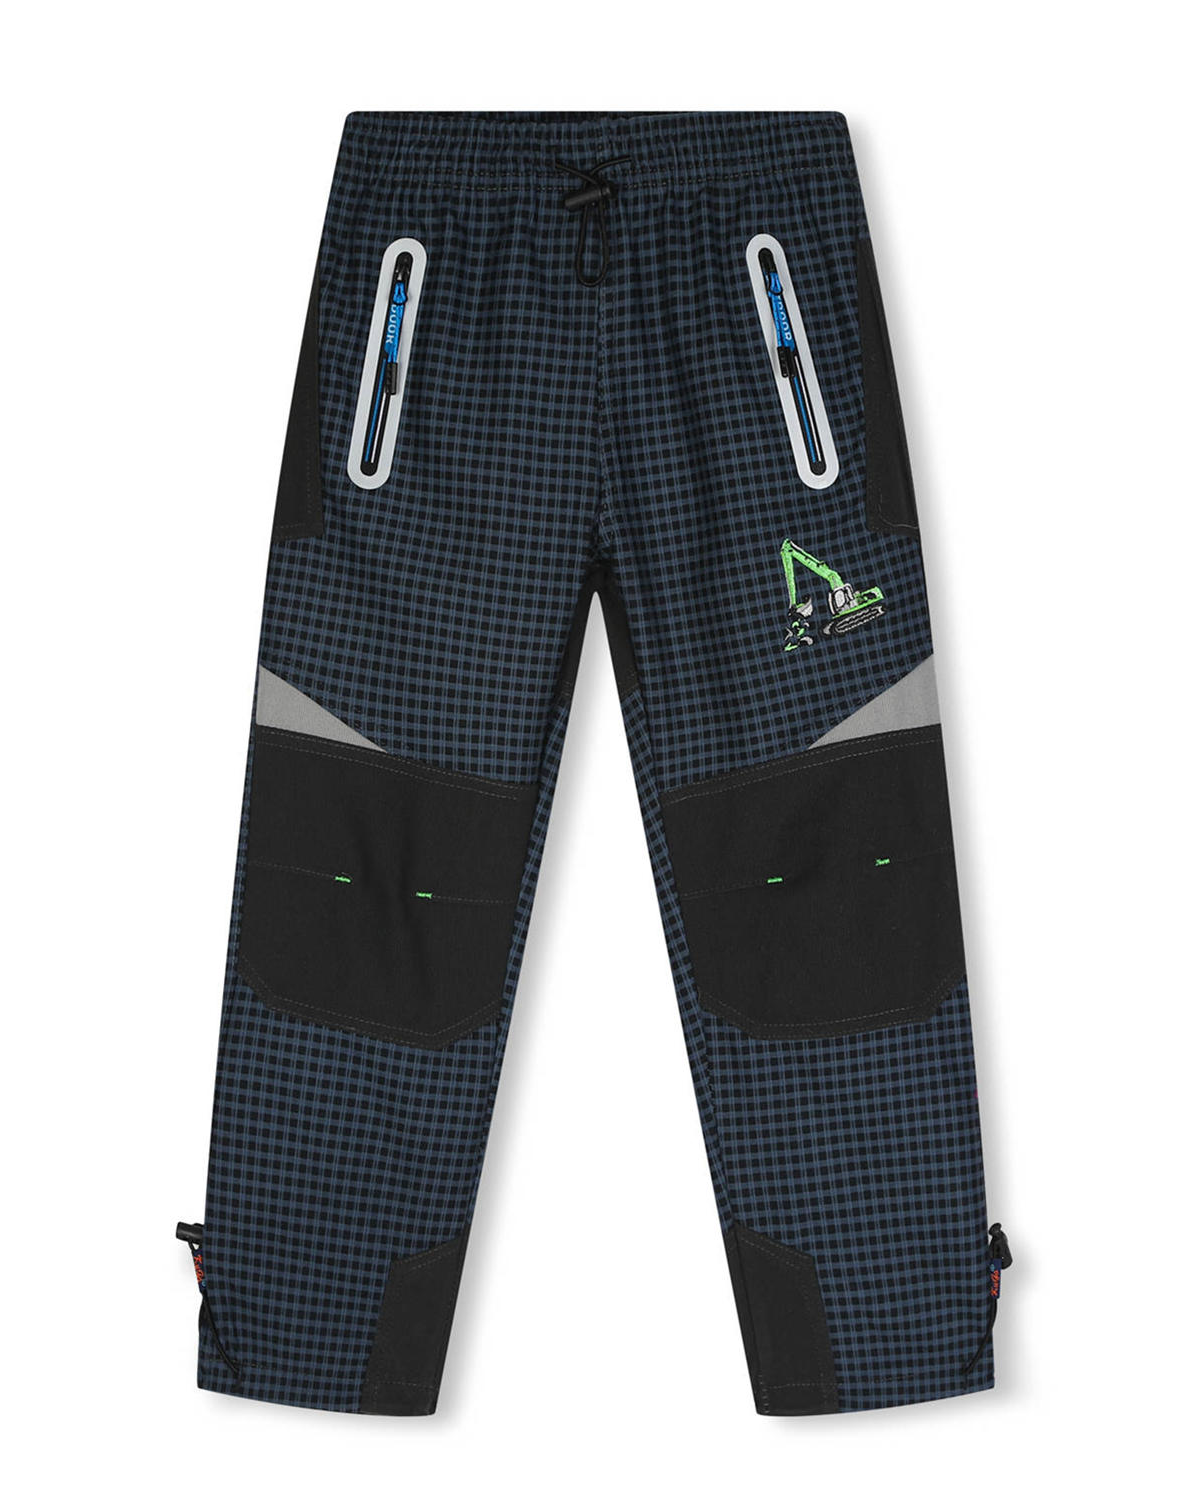 Chlapecké outdoorové kalhoty - KUGO G9650, šedomodrá / modré zipy Barva: Šedá, Velikost: 104